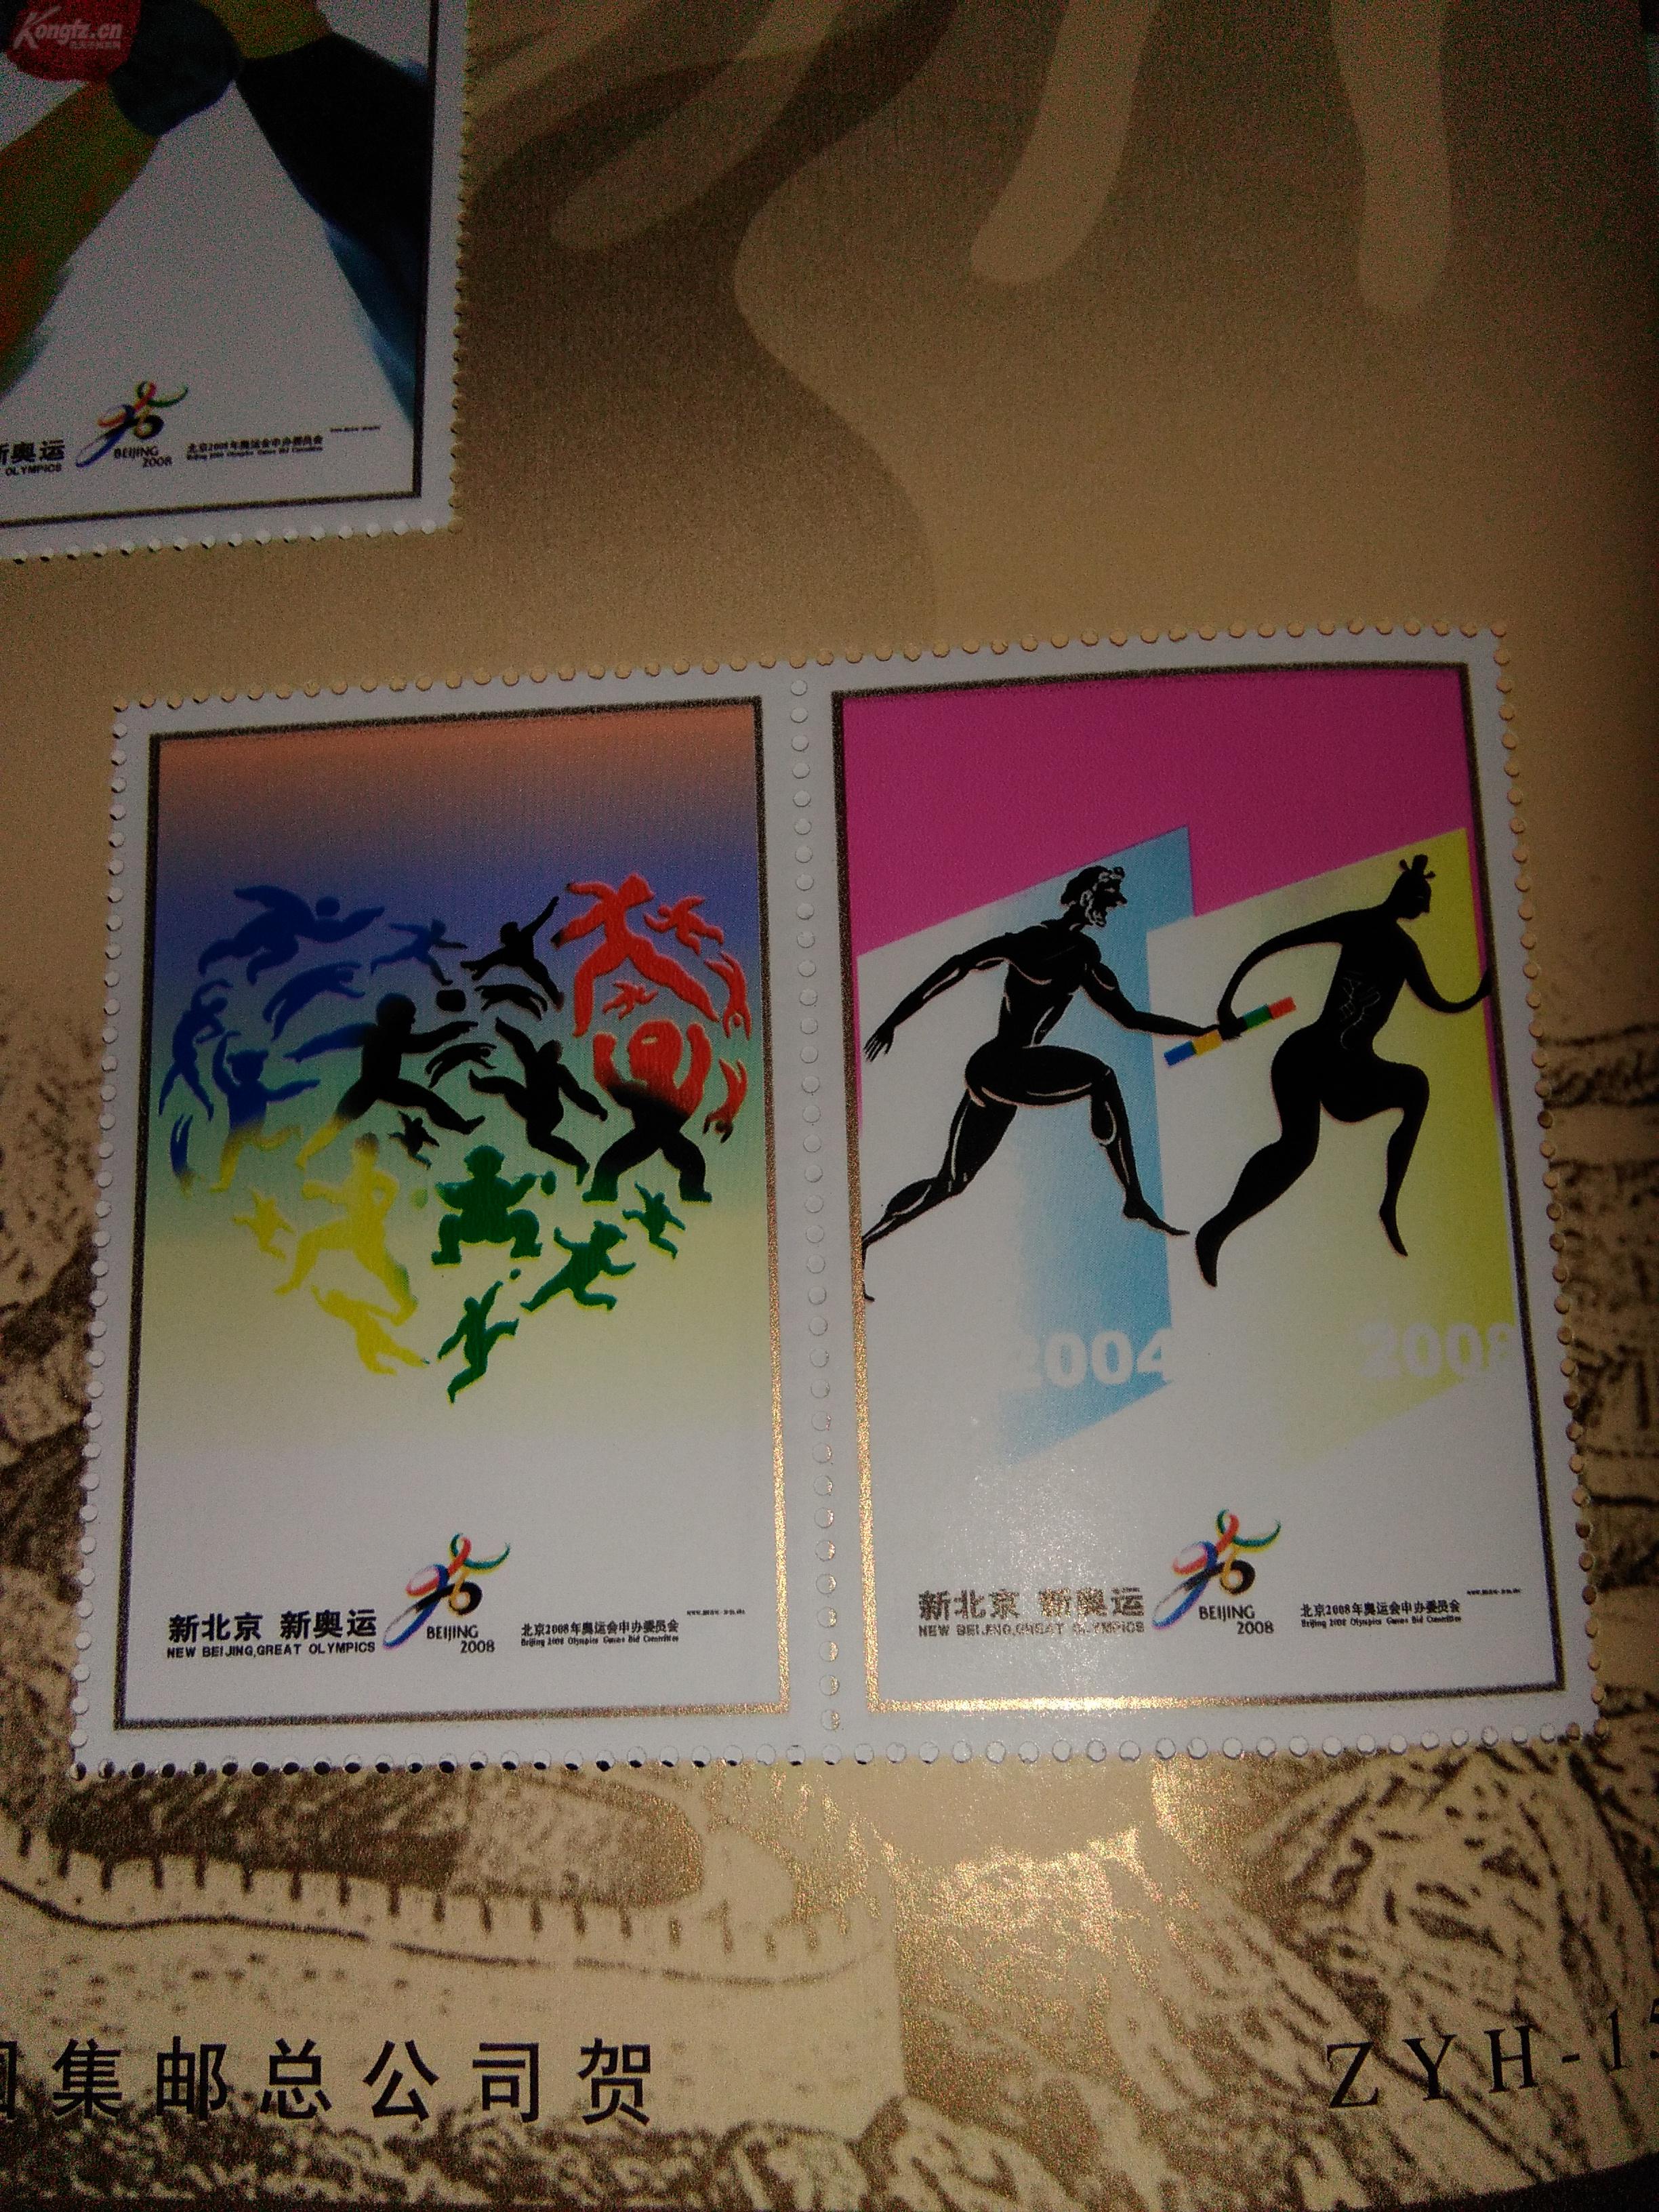 北京产品包装盒印刷|北京印刷包装业与奥运主题合拍